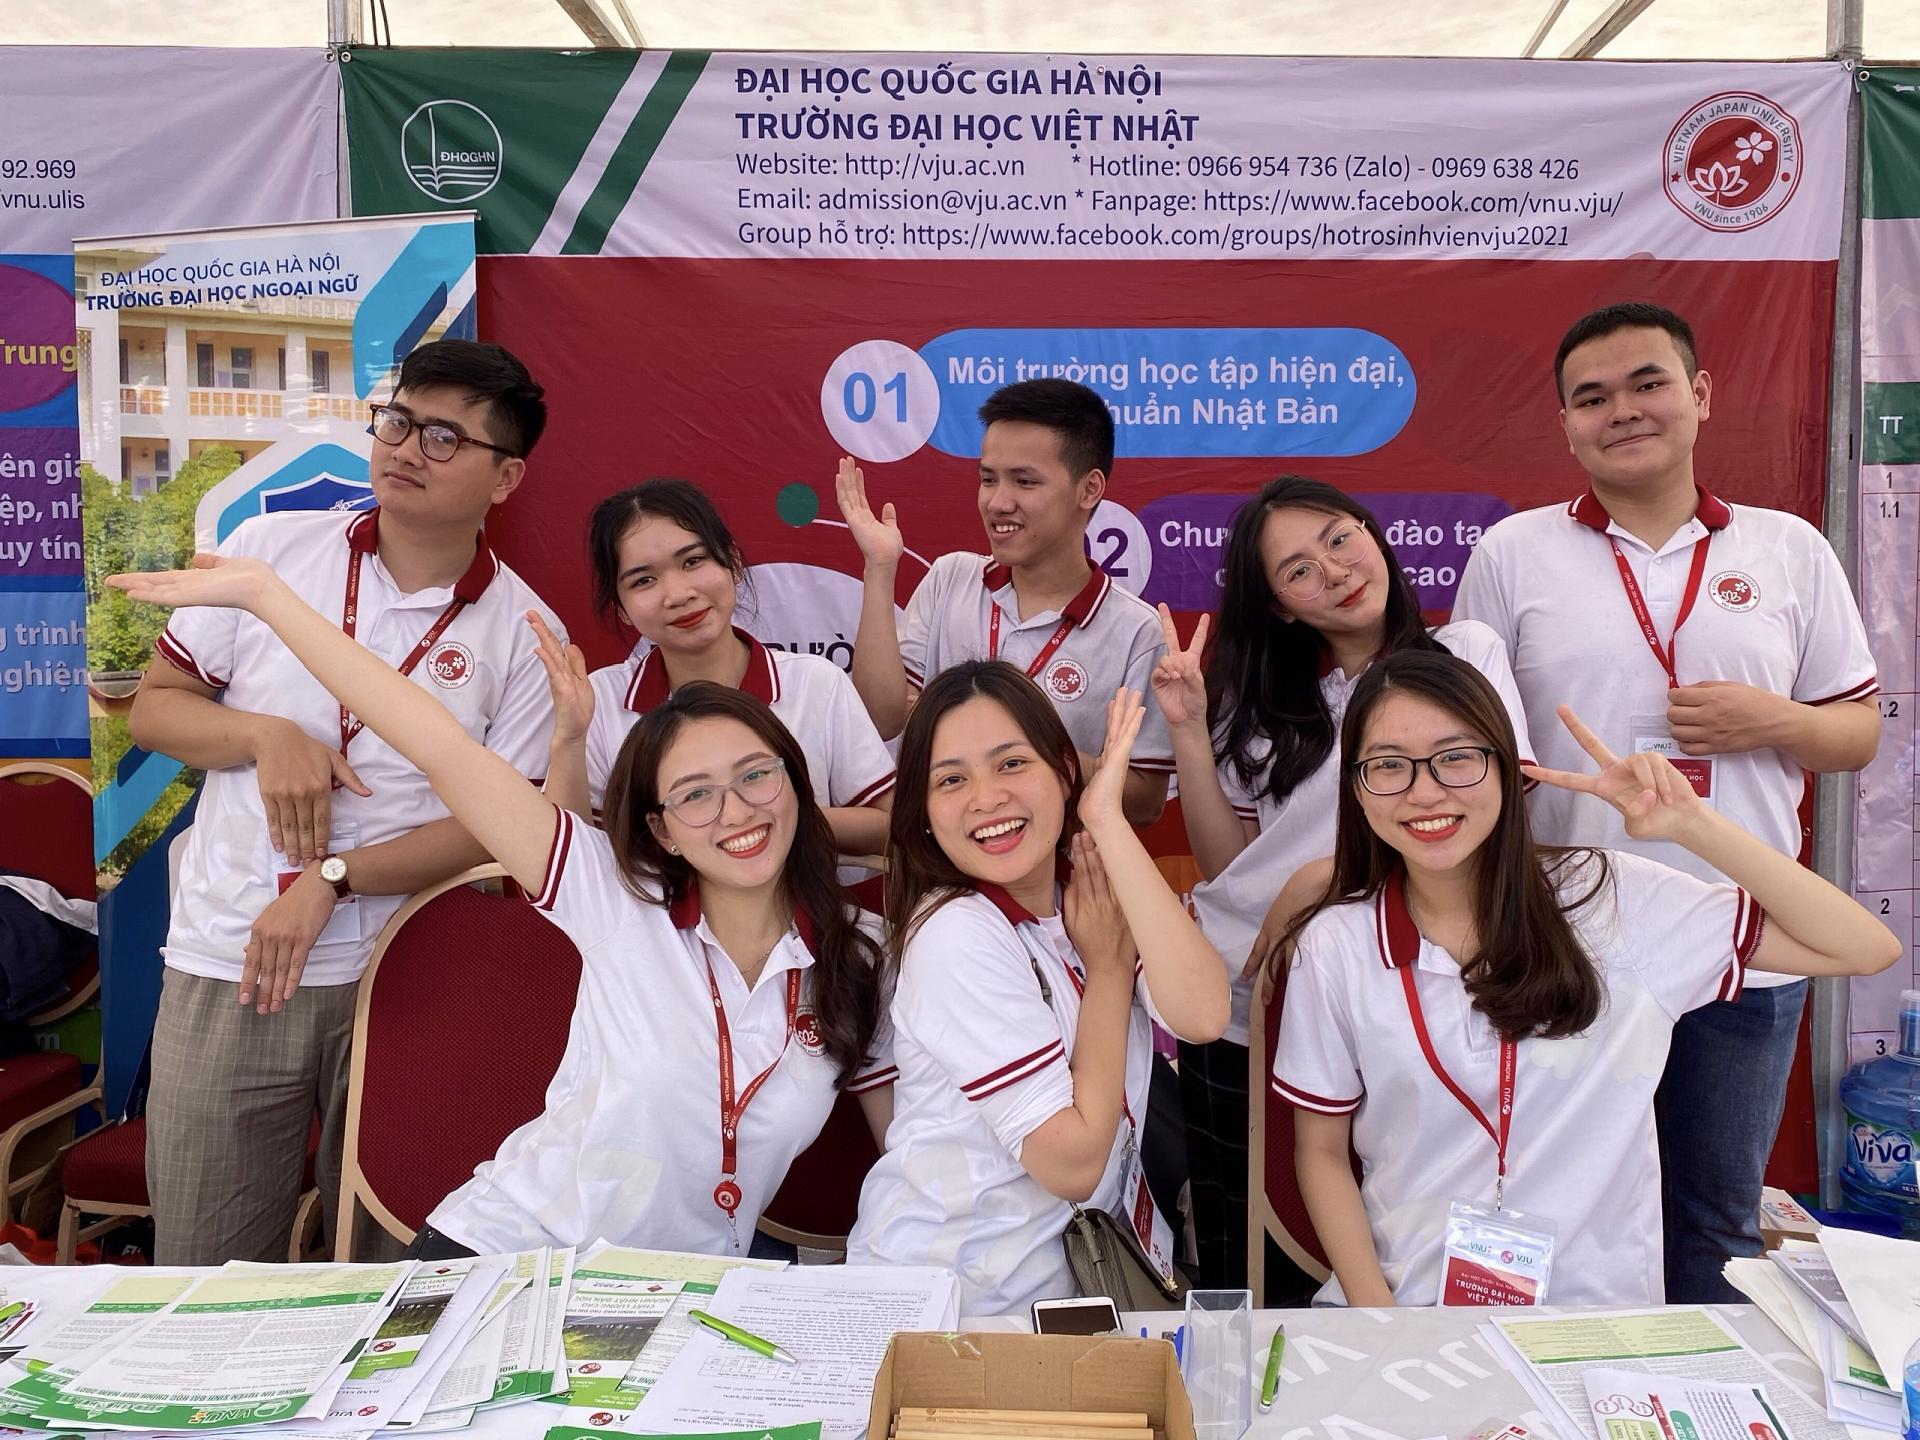 Năm đầu tiên Trường ĐH Việt Nhật tuyển sinh đại học ngành Nhật Bản học  chương trình đào tạo hấp dẫn đón đầu nhu cầu thị trường lao động  ĐẠI HỌC